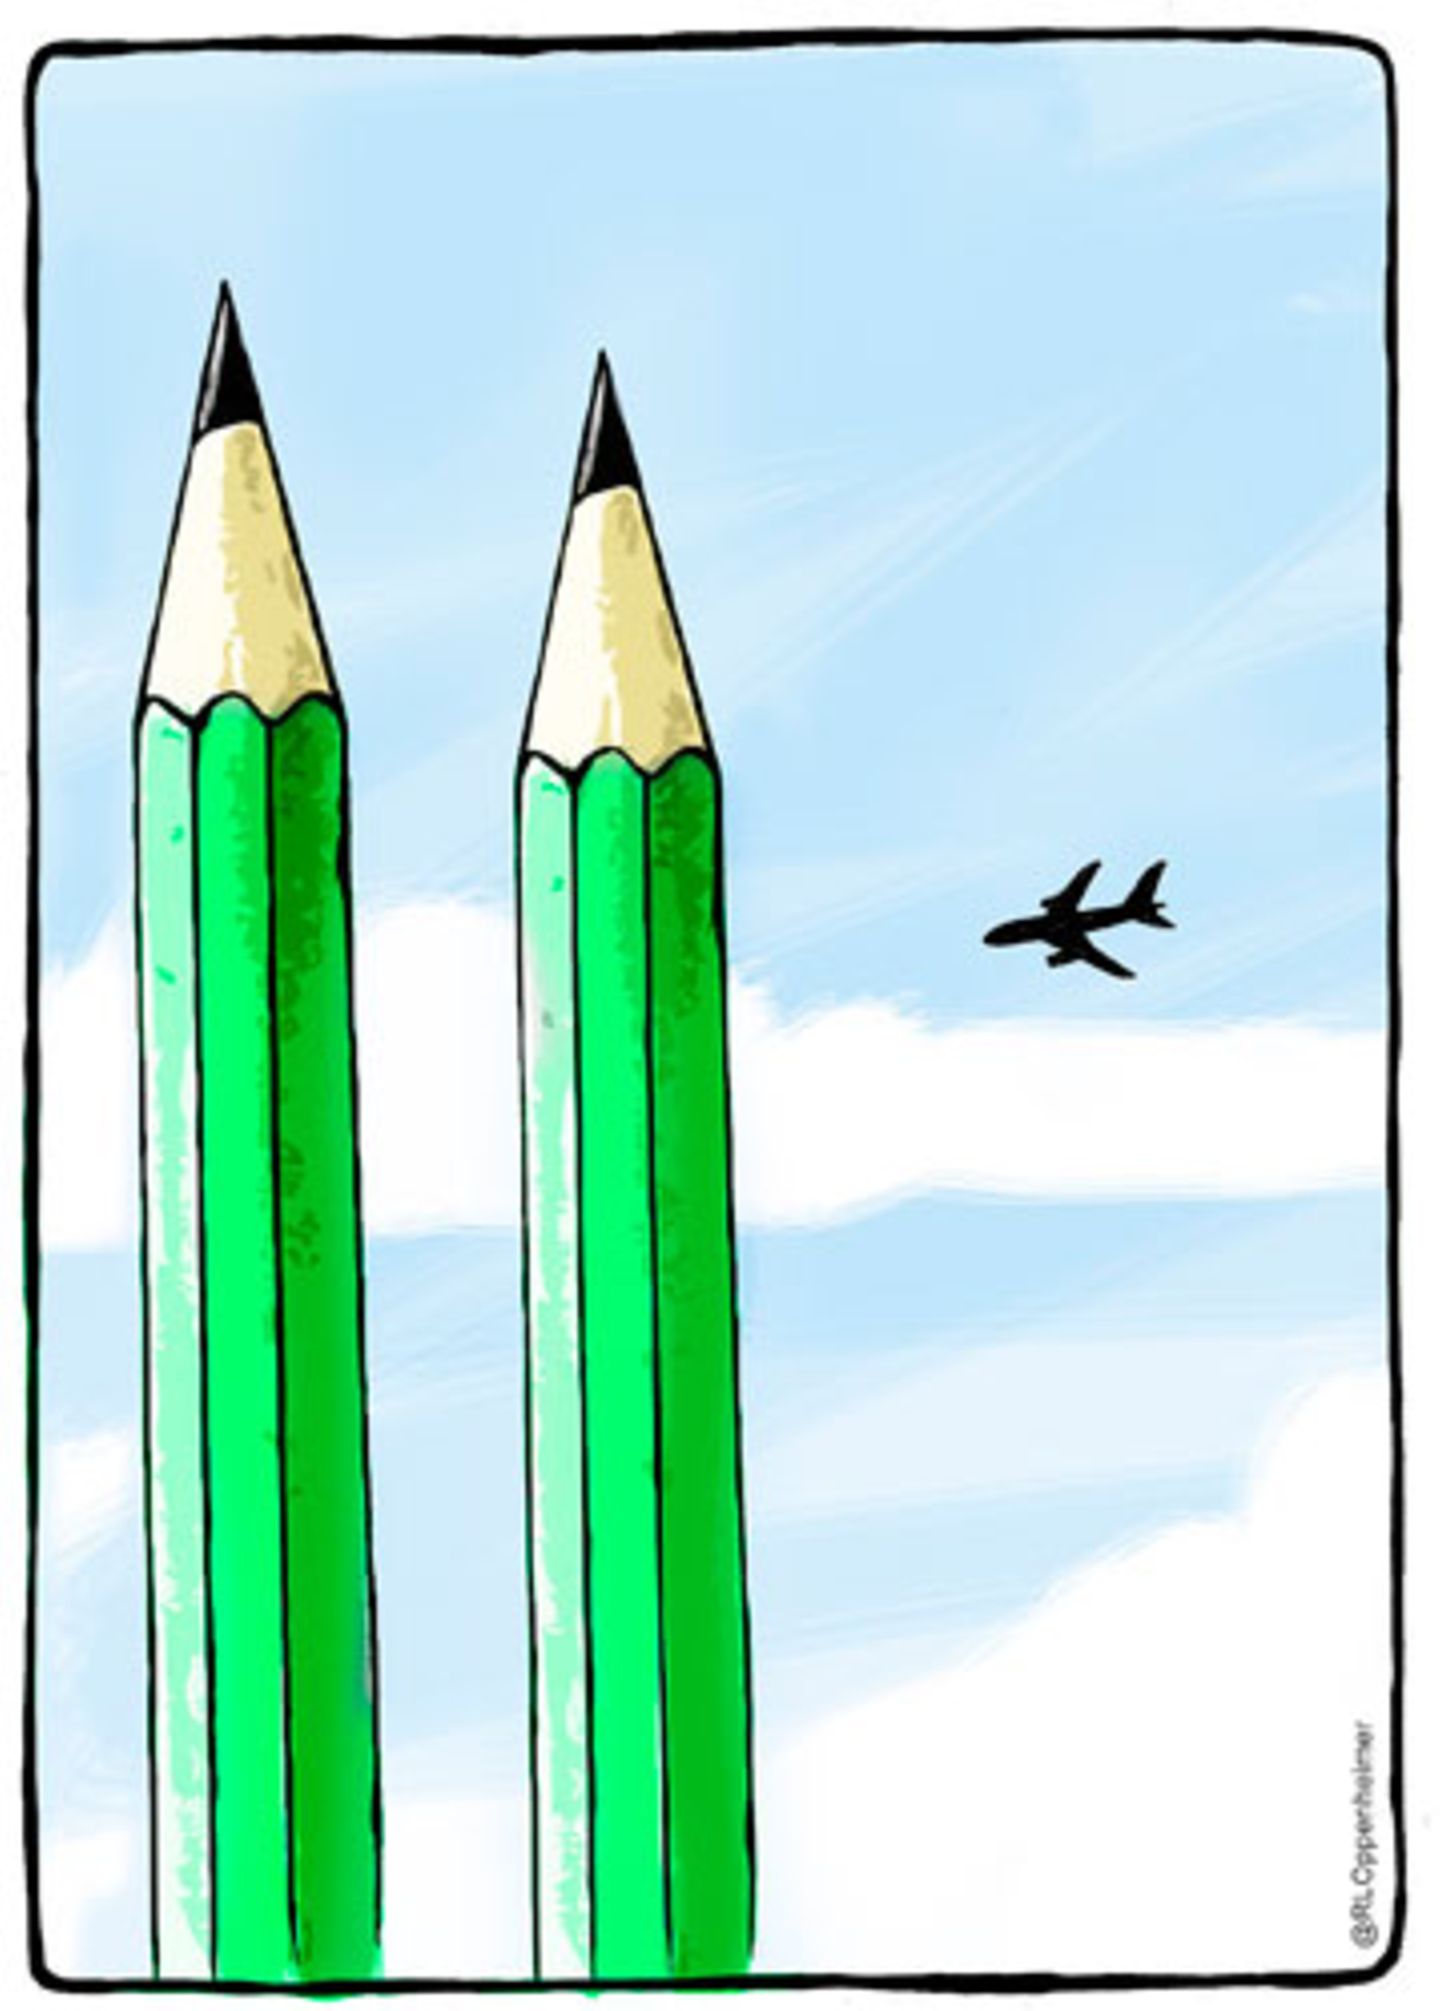 Bei Ruben L. Oppenheimer weckt der Anschlag auf die Redakteure von "Charlie Hebdo" Erinnerungen an den 11. September.